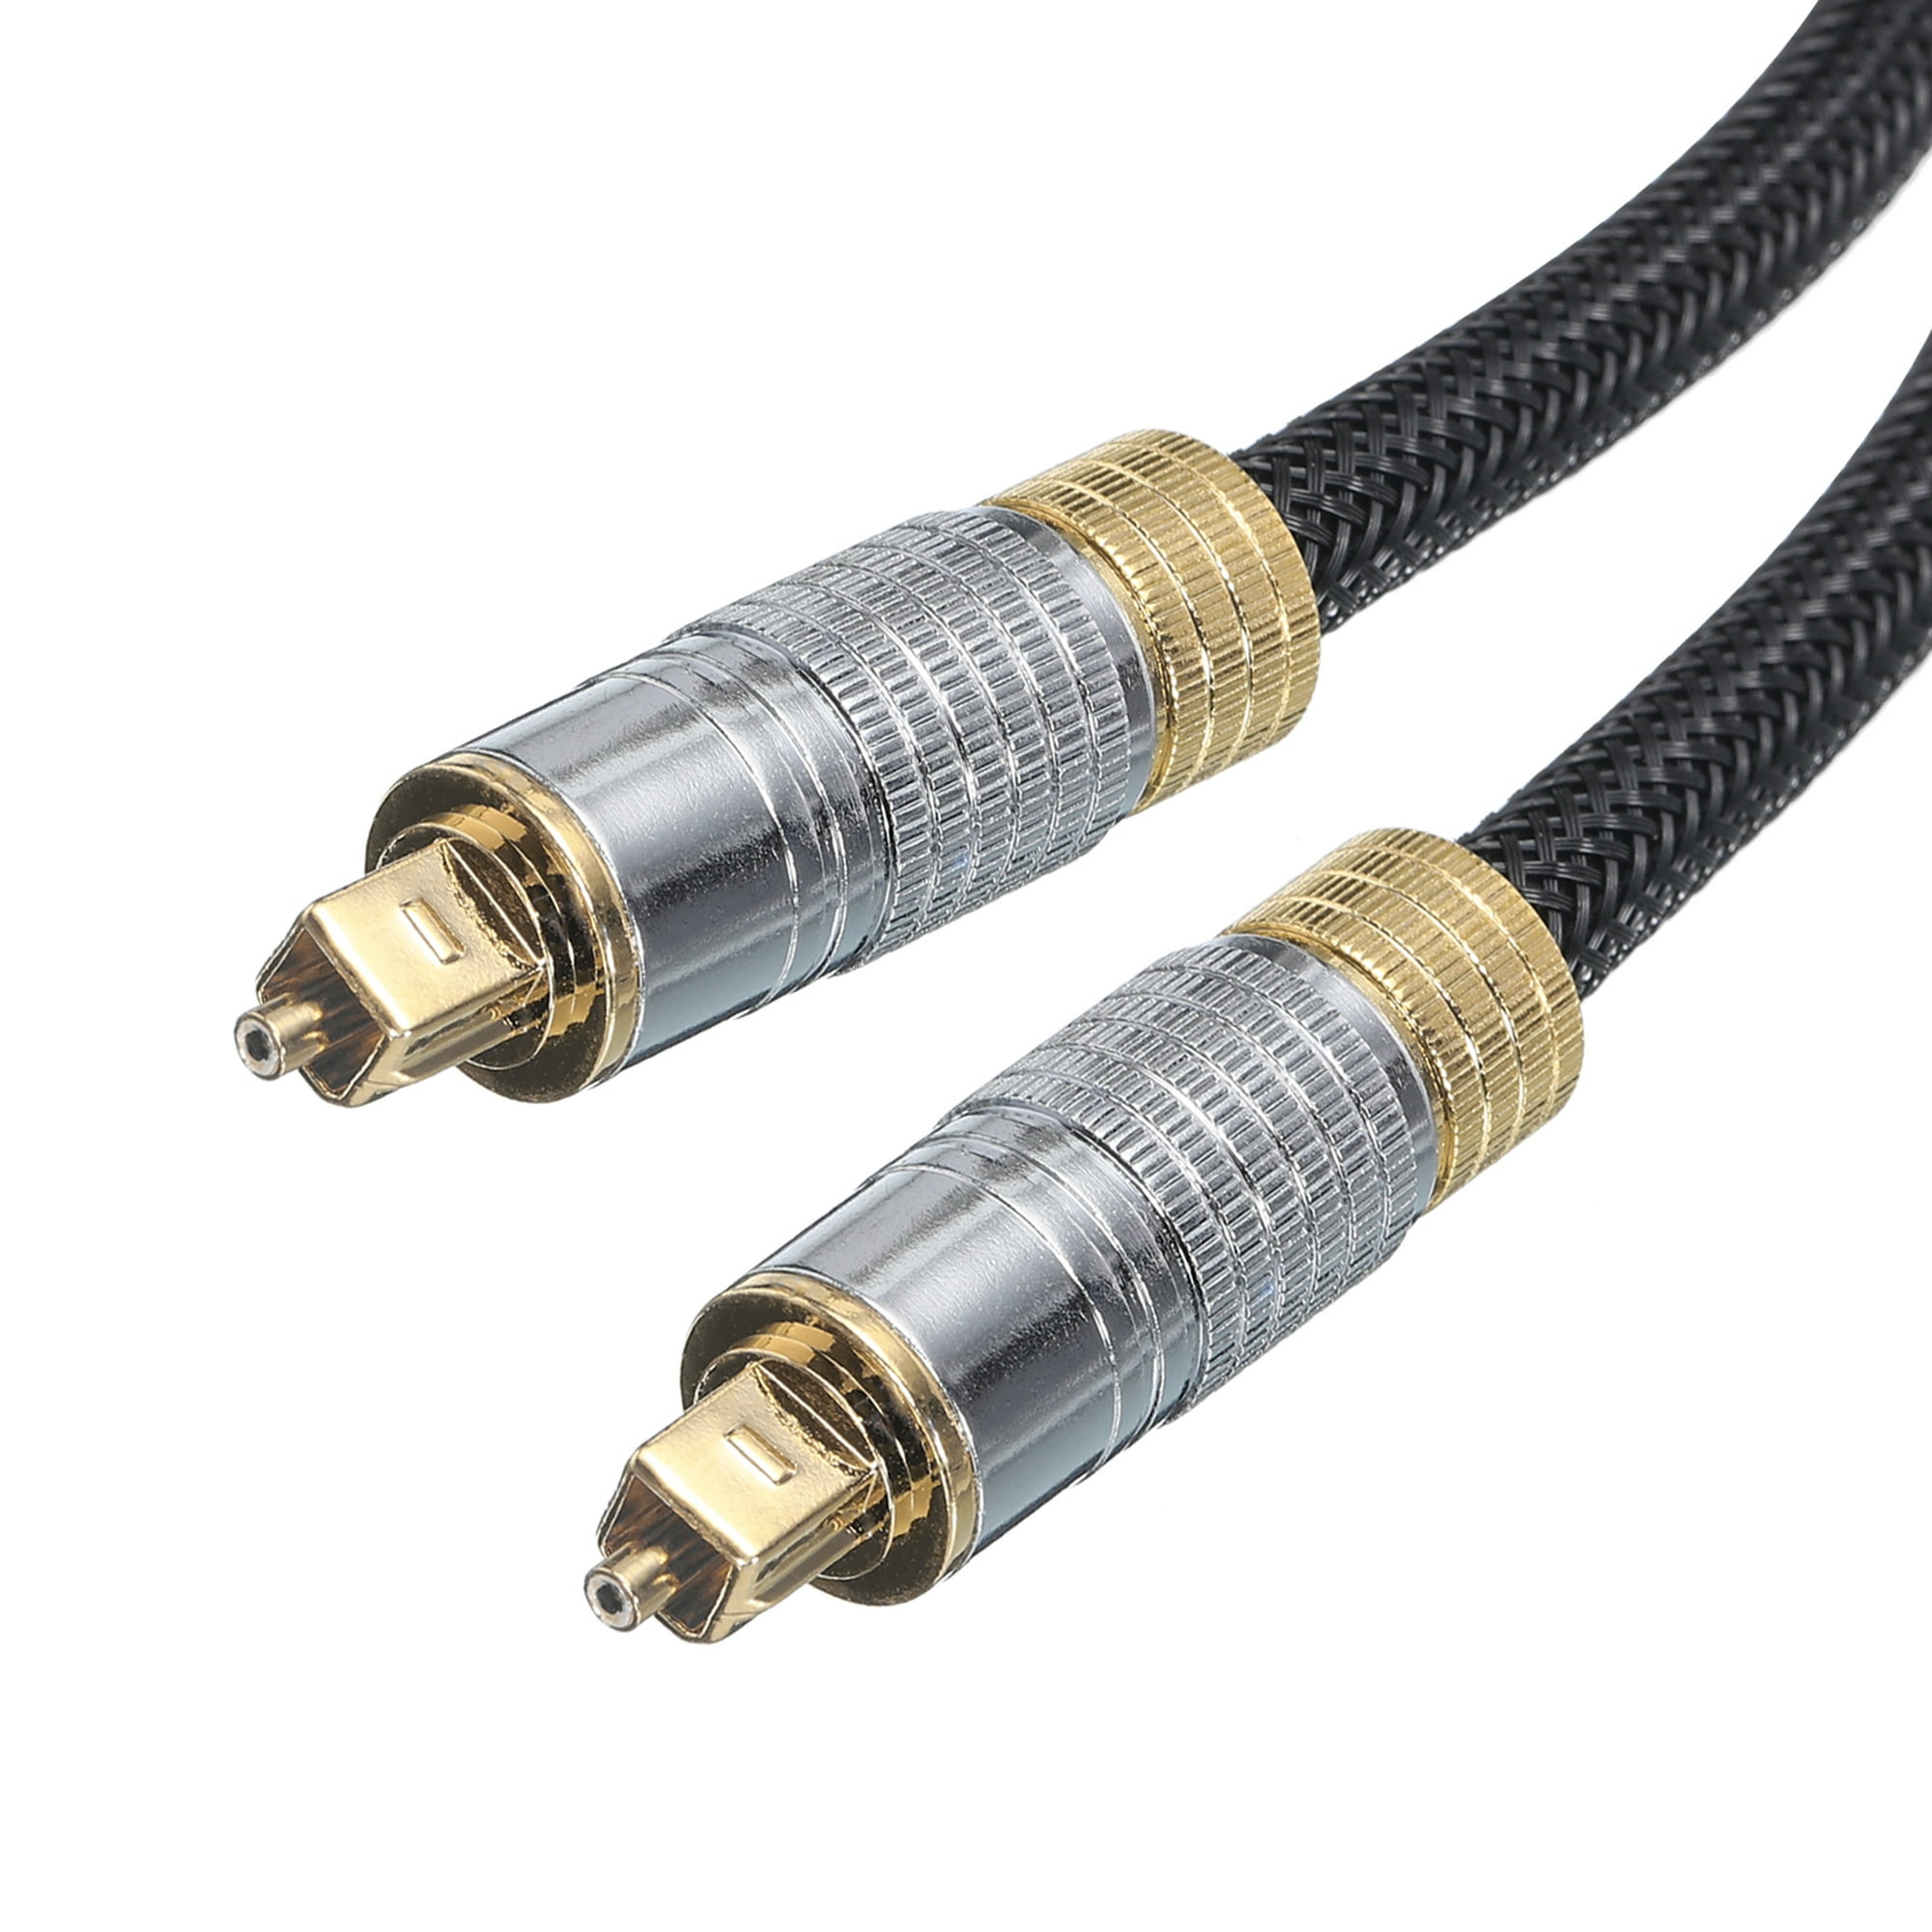 Cable óptico de audio digital de 4.9 ft para la mejor calidad de sonido